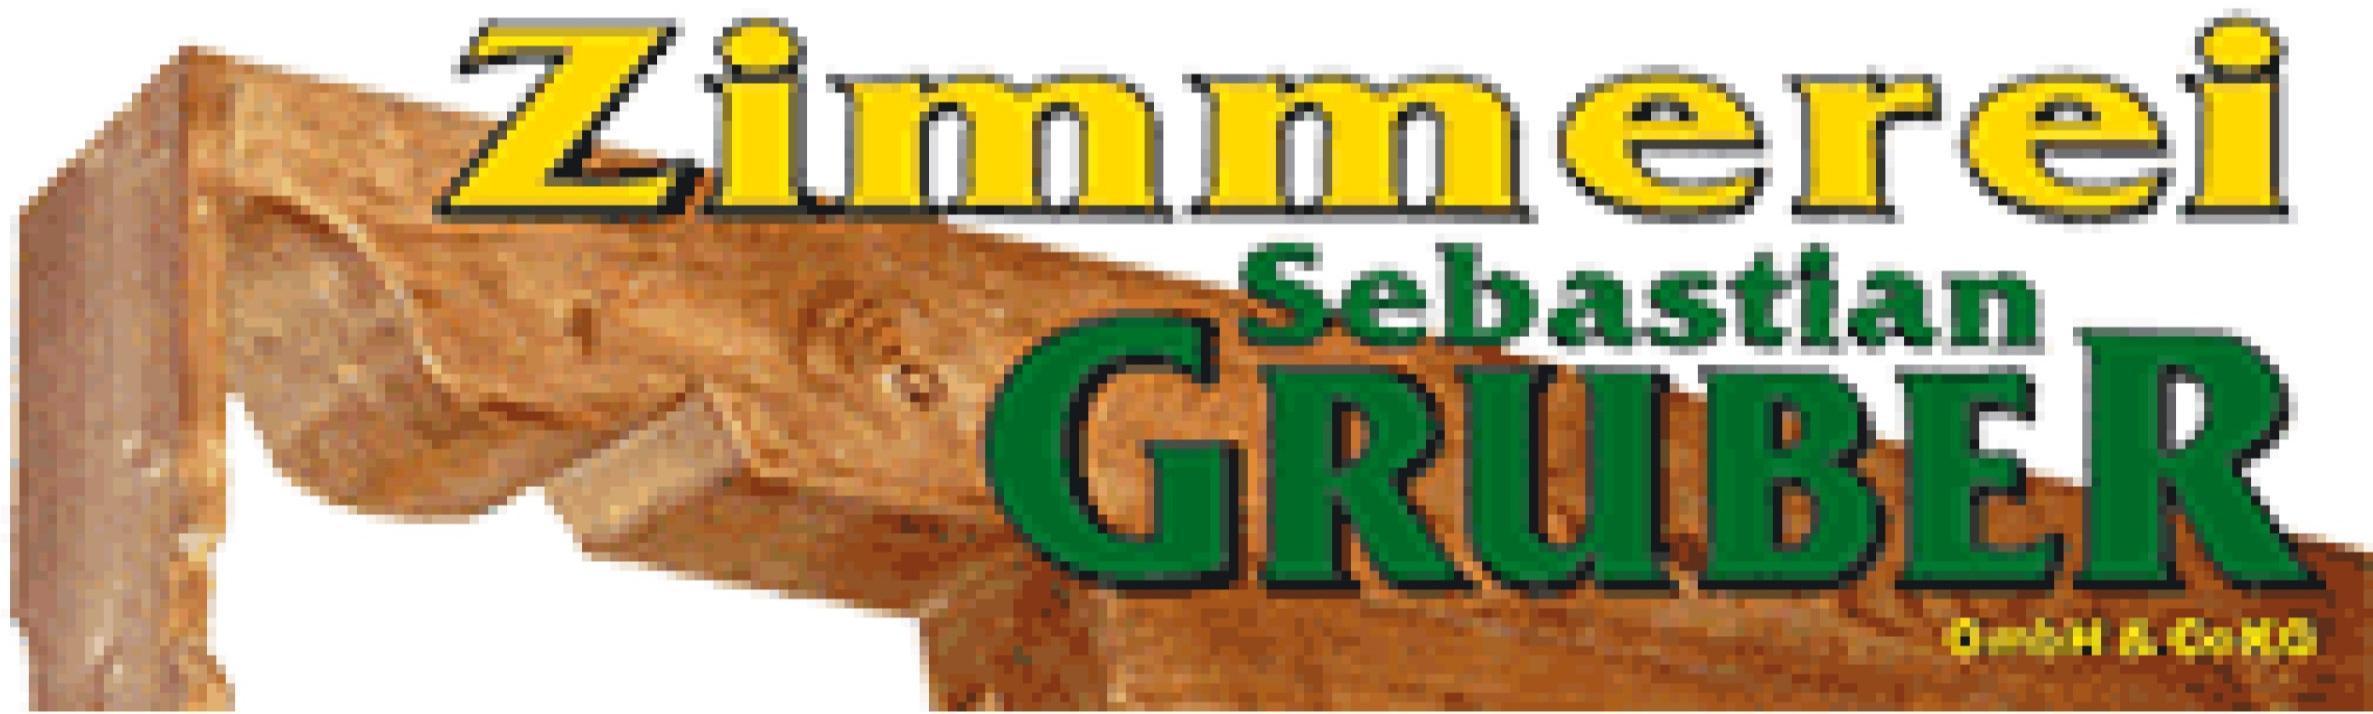 Logo Zimmerei Sebastian Gruber GmbH & Co KG